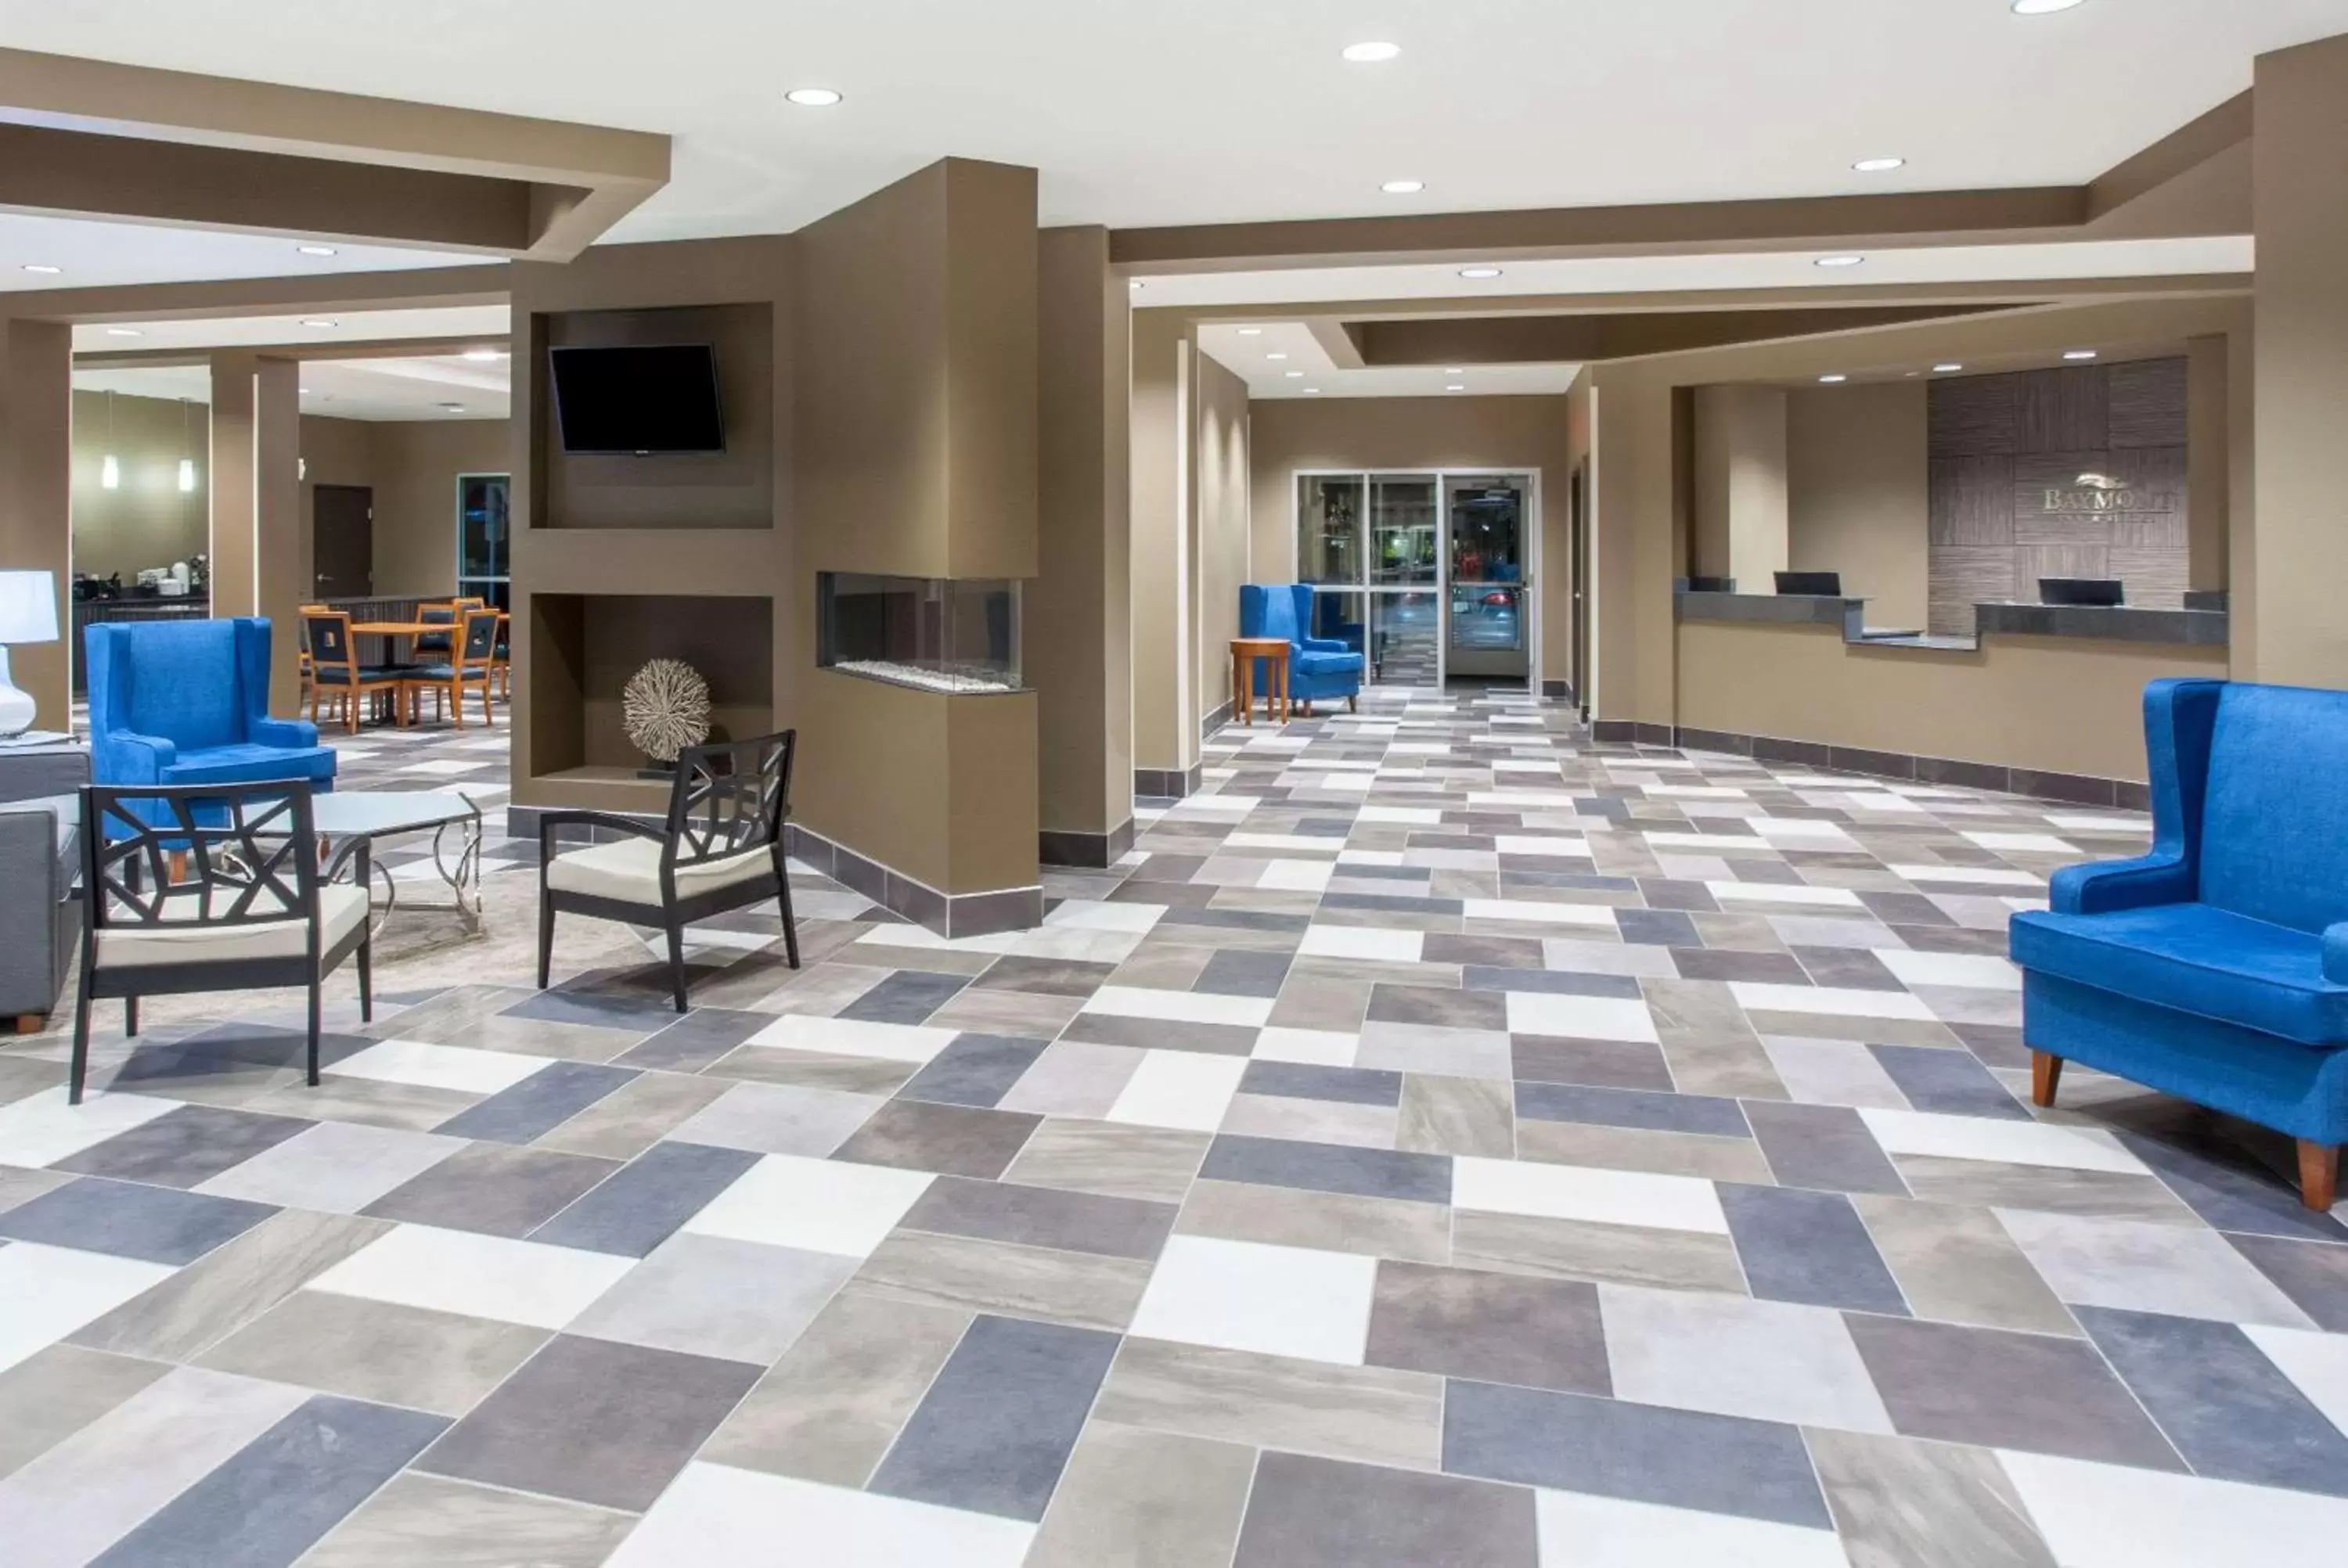 Lobby or reception, Lobby/Reception in Baymont by Wyndham Grand Forks